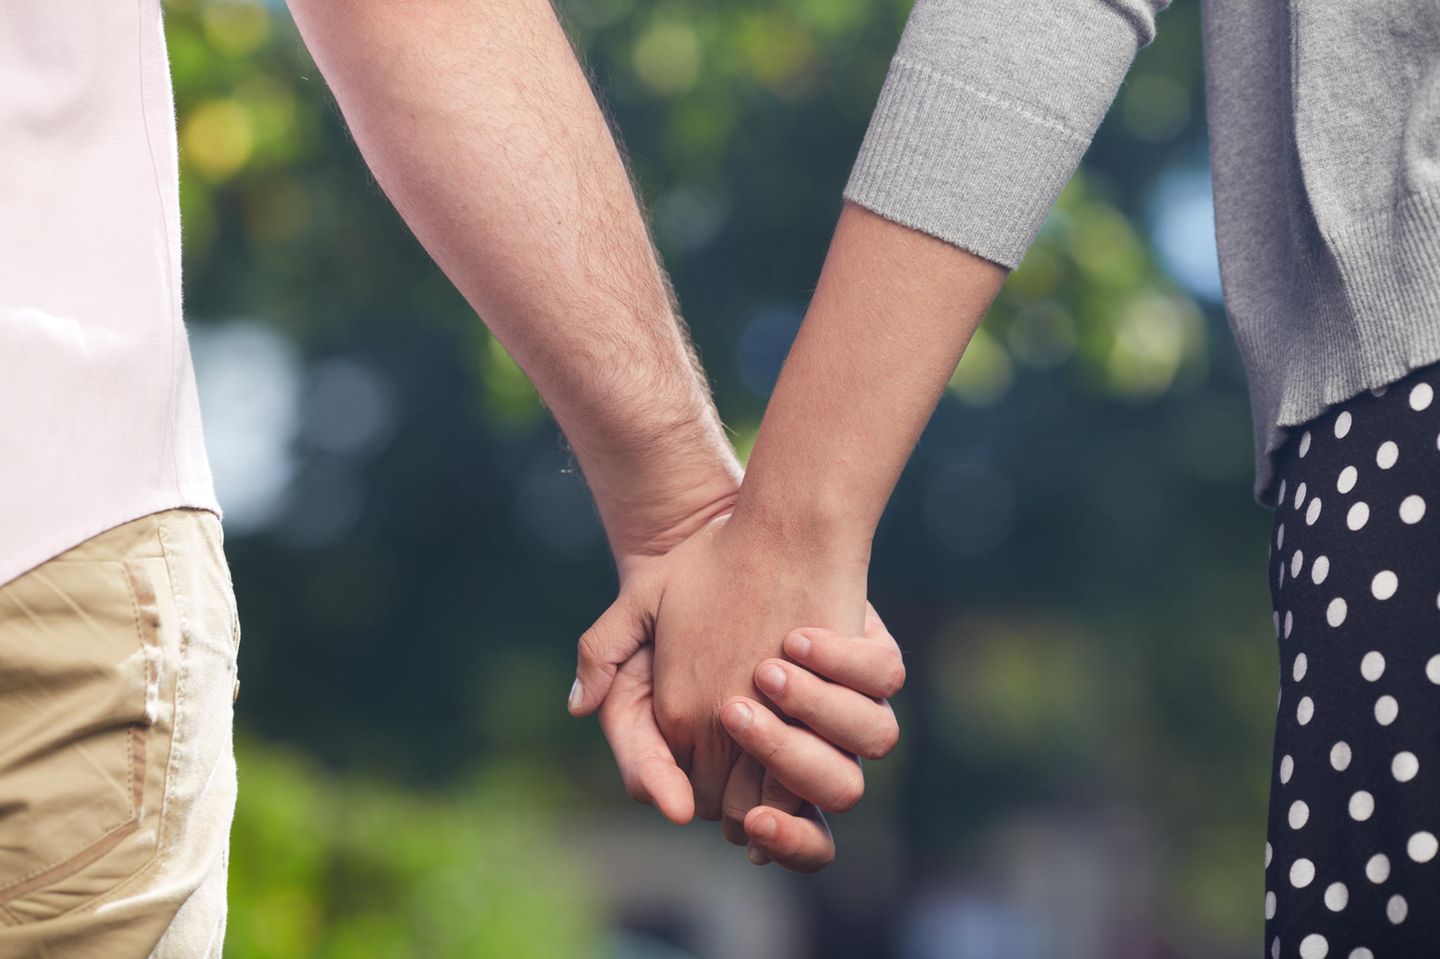 Polizei ermittelt wegen Betrugt: Paar hält Händchen